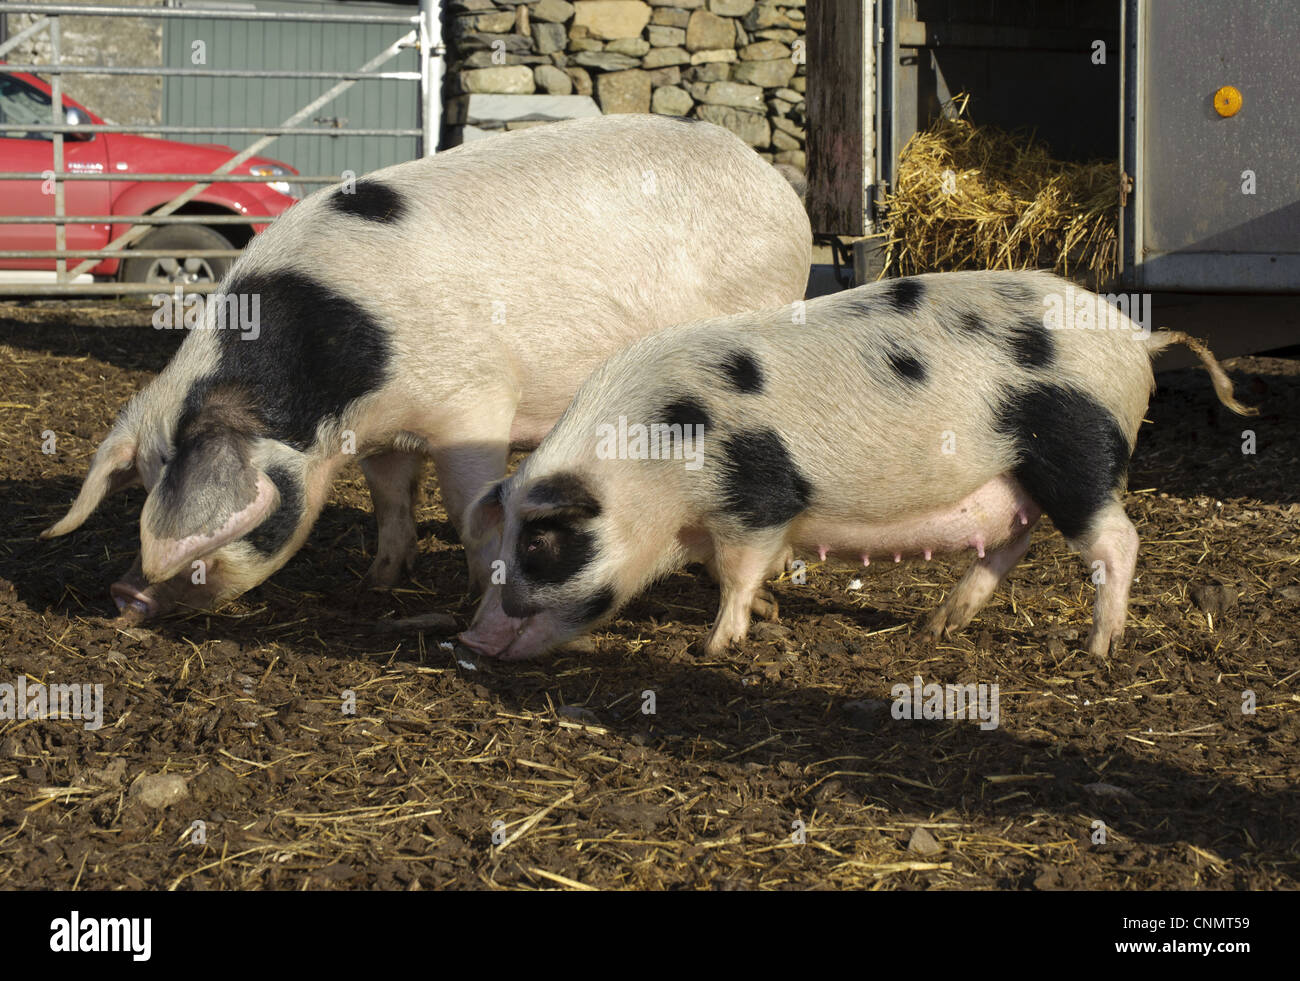 Inländische Schweine Gloucester alten Stelle Sauen normal kleiner selektiv gezüchtet sät Teil Mikro Schweinezucht Prozess Cumbria, England Stockfoto